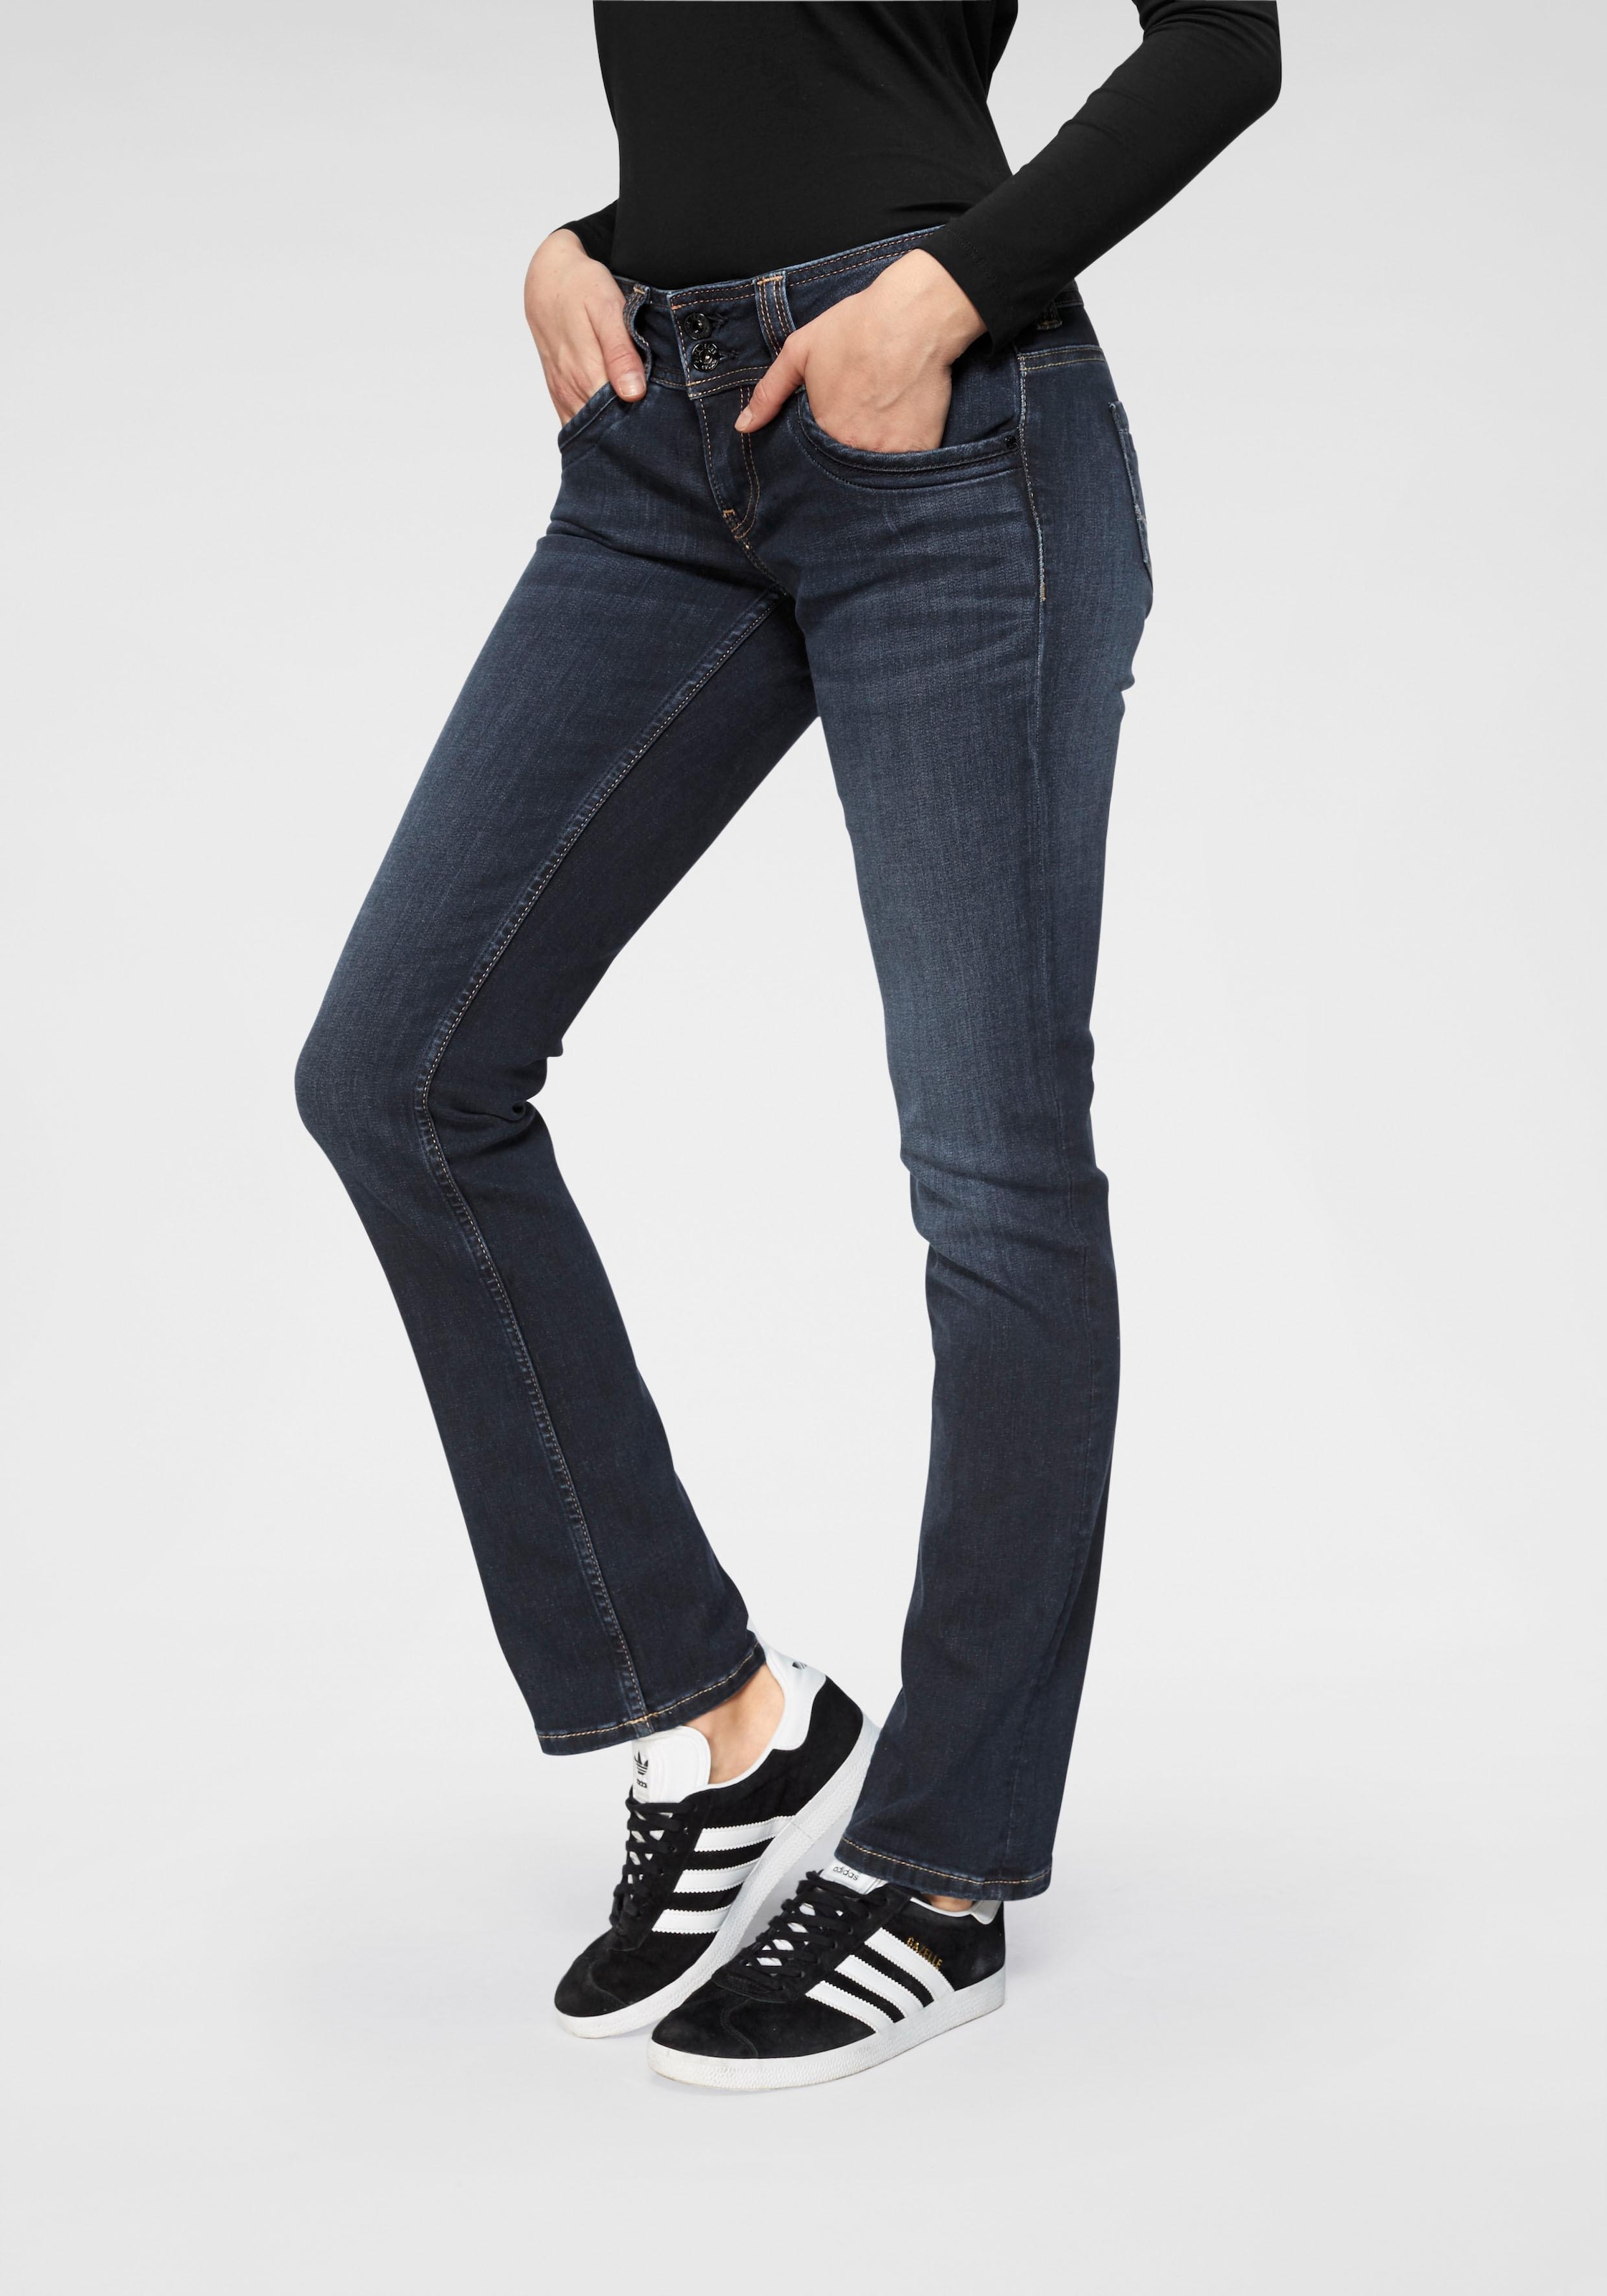 »GEN«, jetzt %Sale mit Bein Doppel-Knopf-Bund im und in Qualtät geradem Jeans schöner Pepe 5-Pocket-Hose